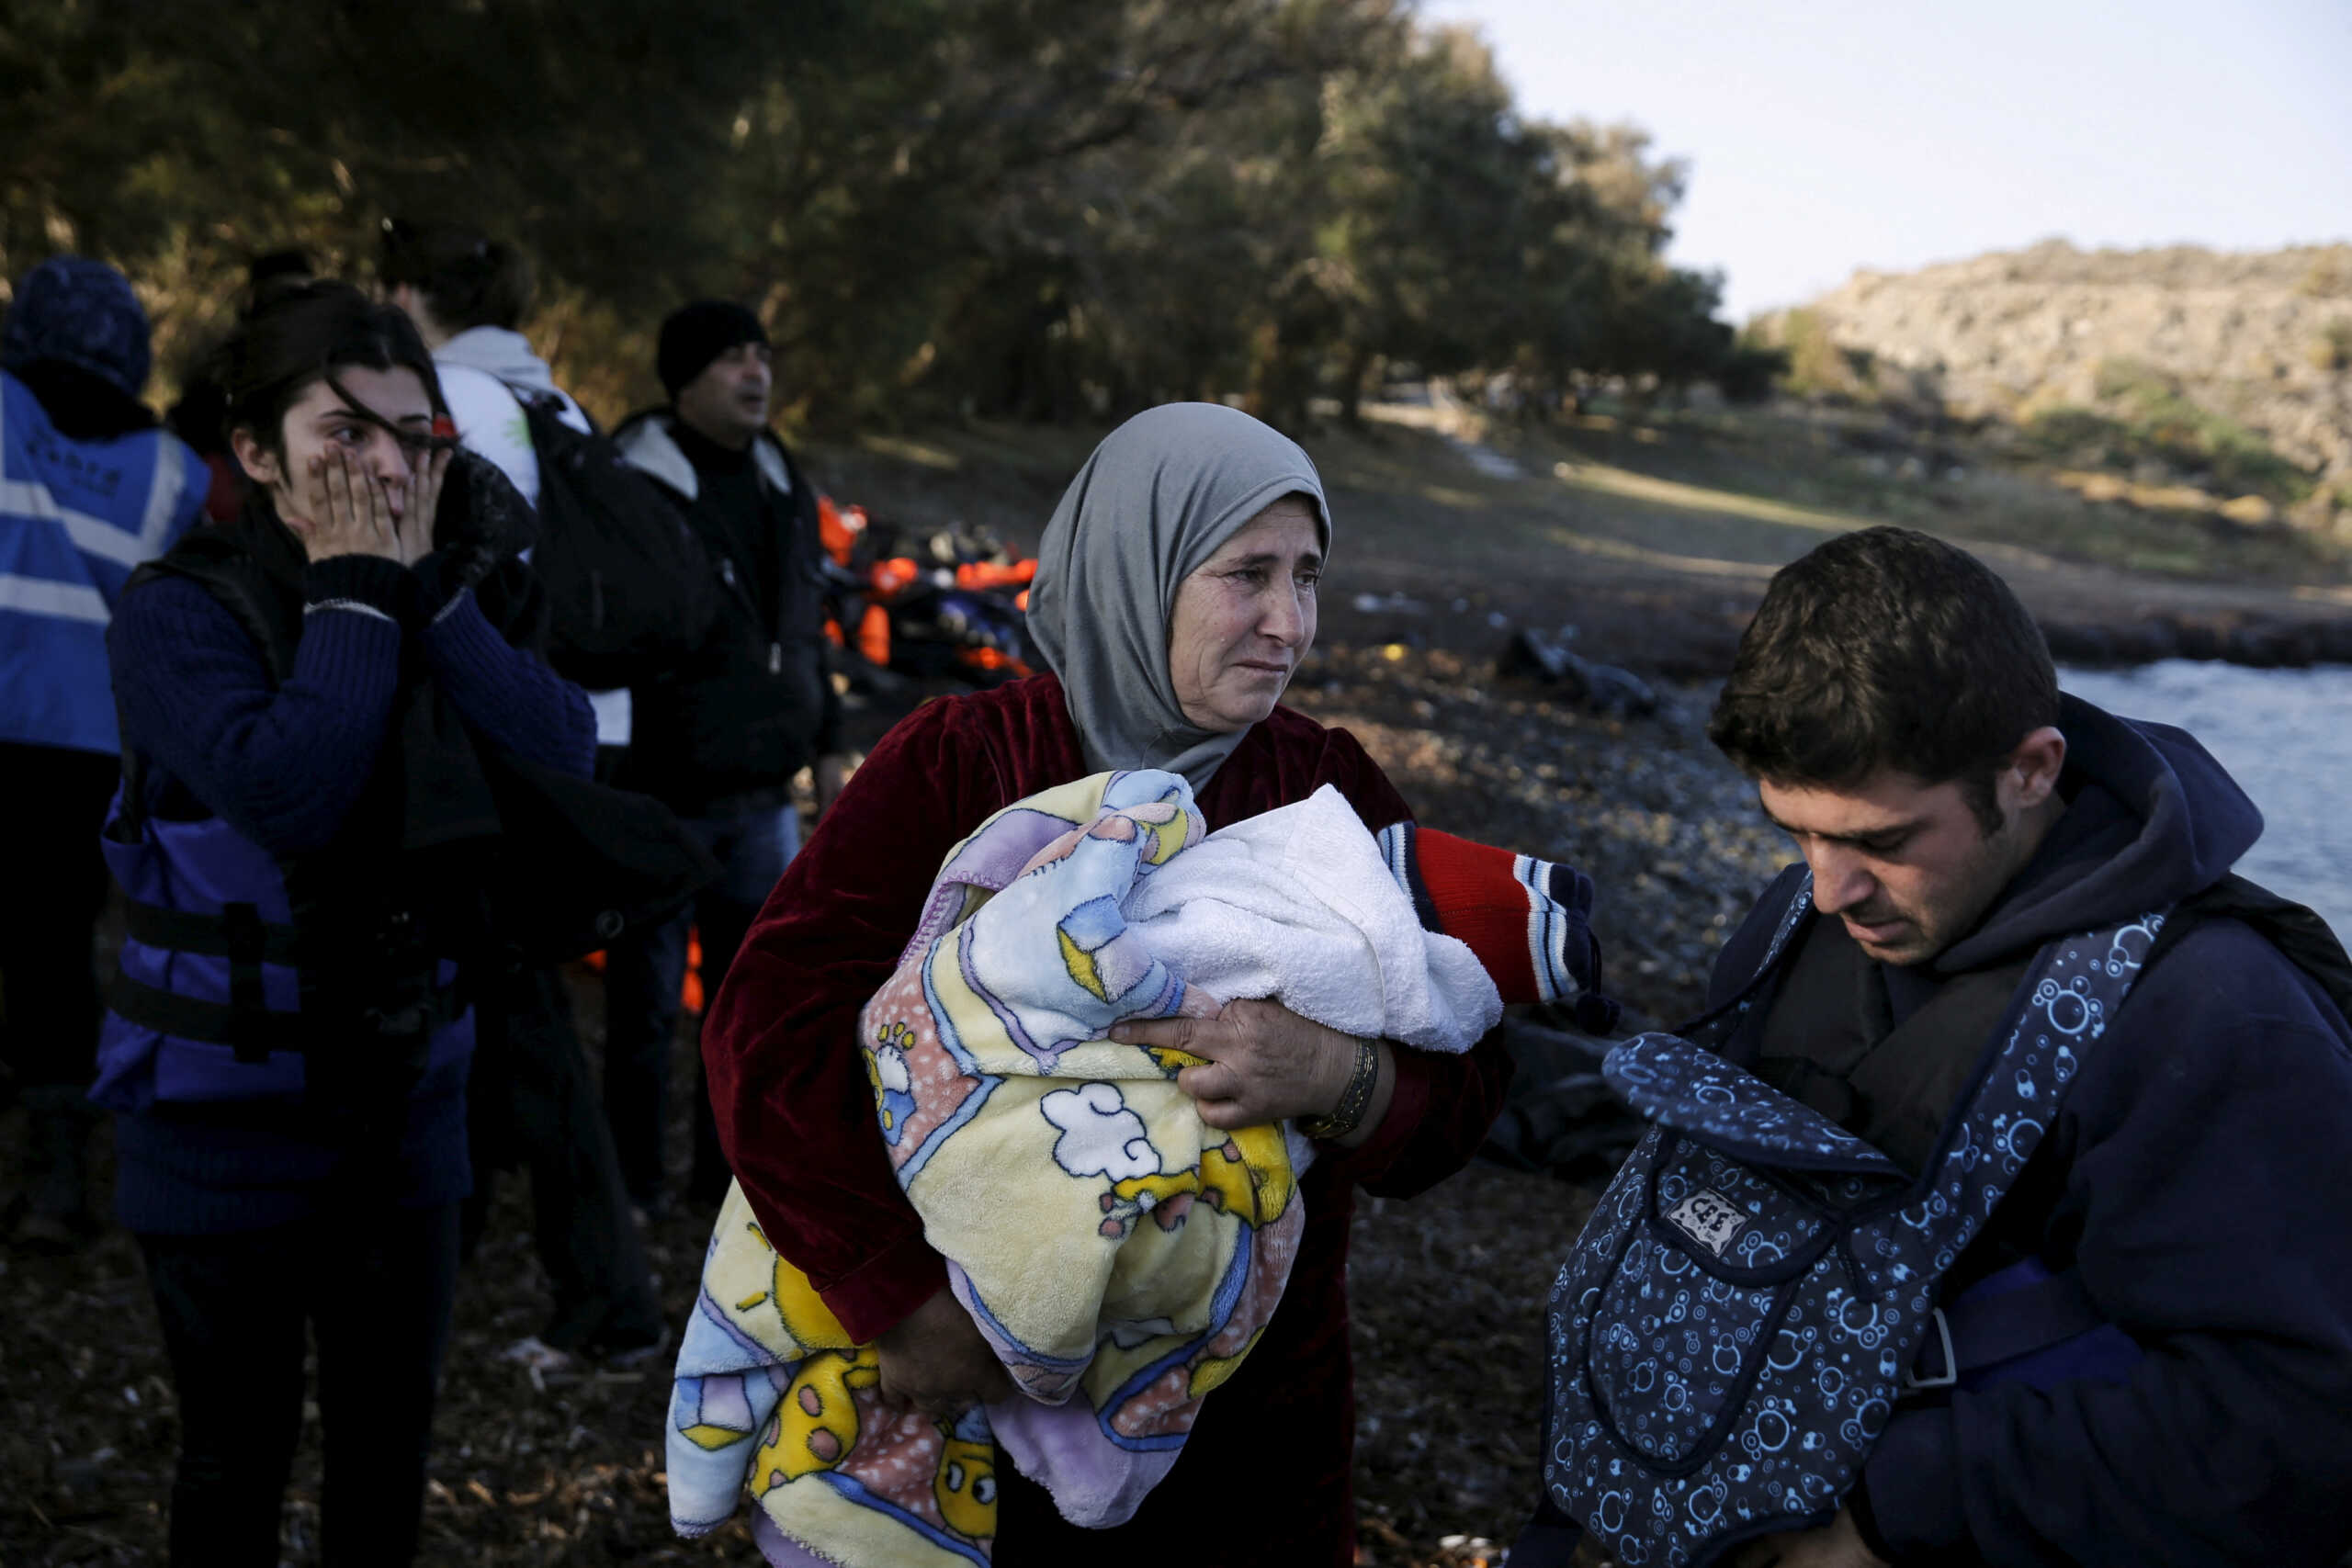 Ουγγαρία: Πρόστιμο 200 εκατ. ευρώ επειδή δεν συμμορφώνεται με το ευρωπαϊκό δίκαιο για το άσυλο